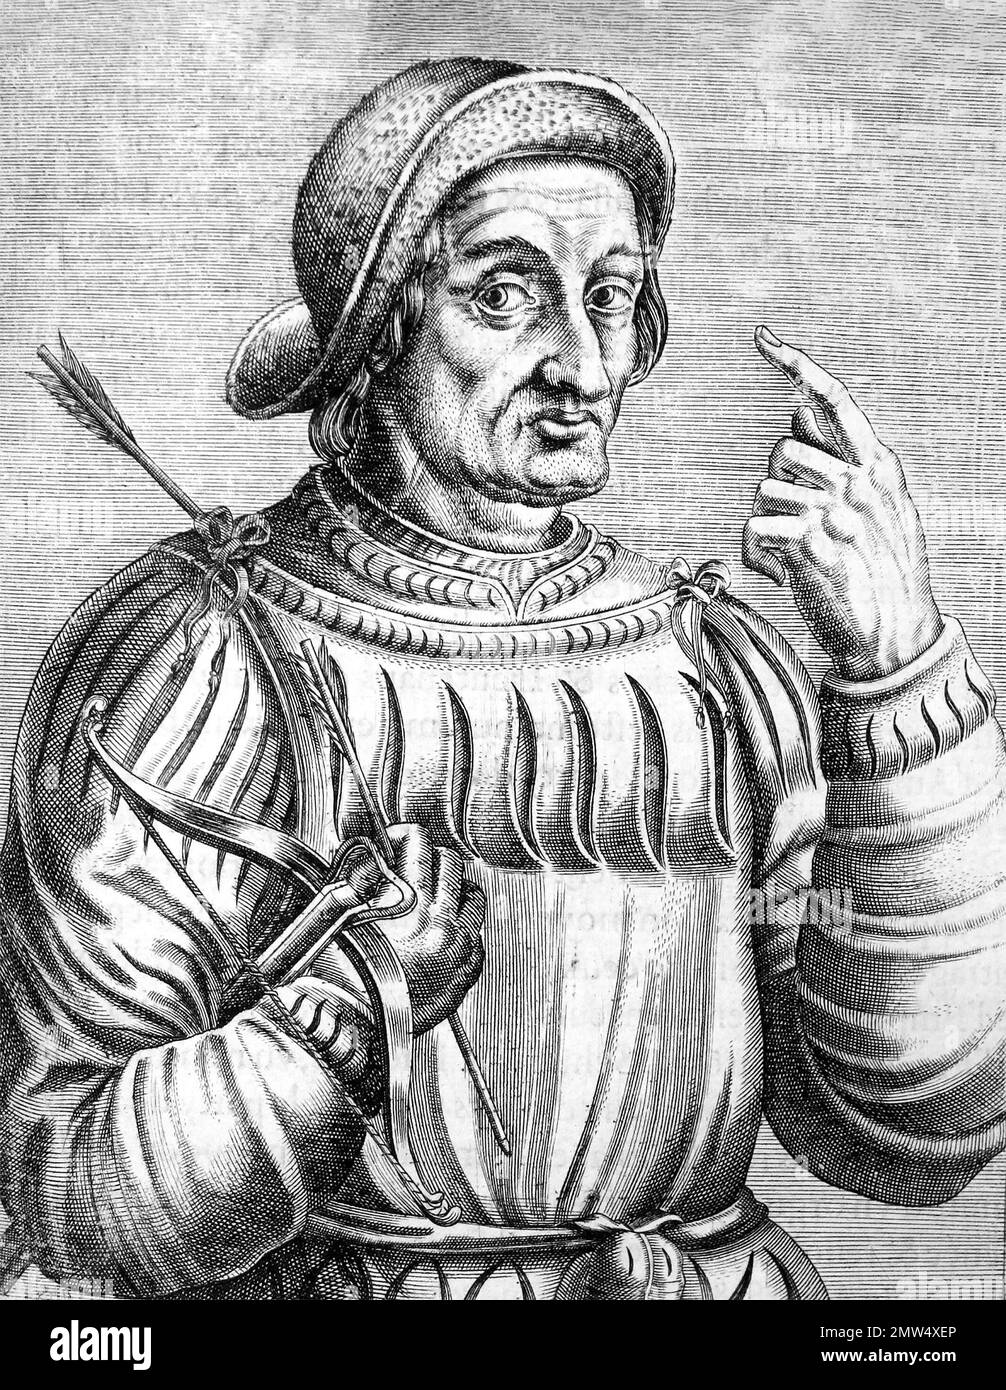 William Tell. Eine Illustration von William Tell aus dem 16. Jahrhundert von Andre Thevet, 1584. William Tell war im 14. Jahrhundert ein Volksheld in der Schweiz. Stockfoto